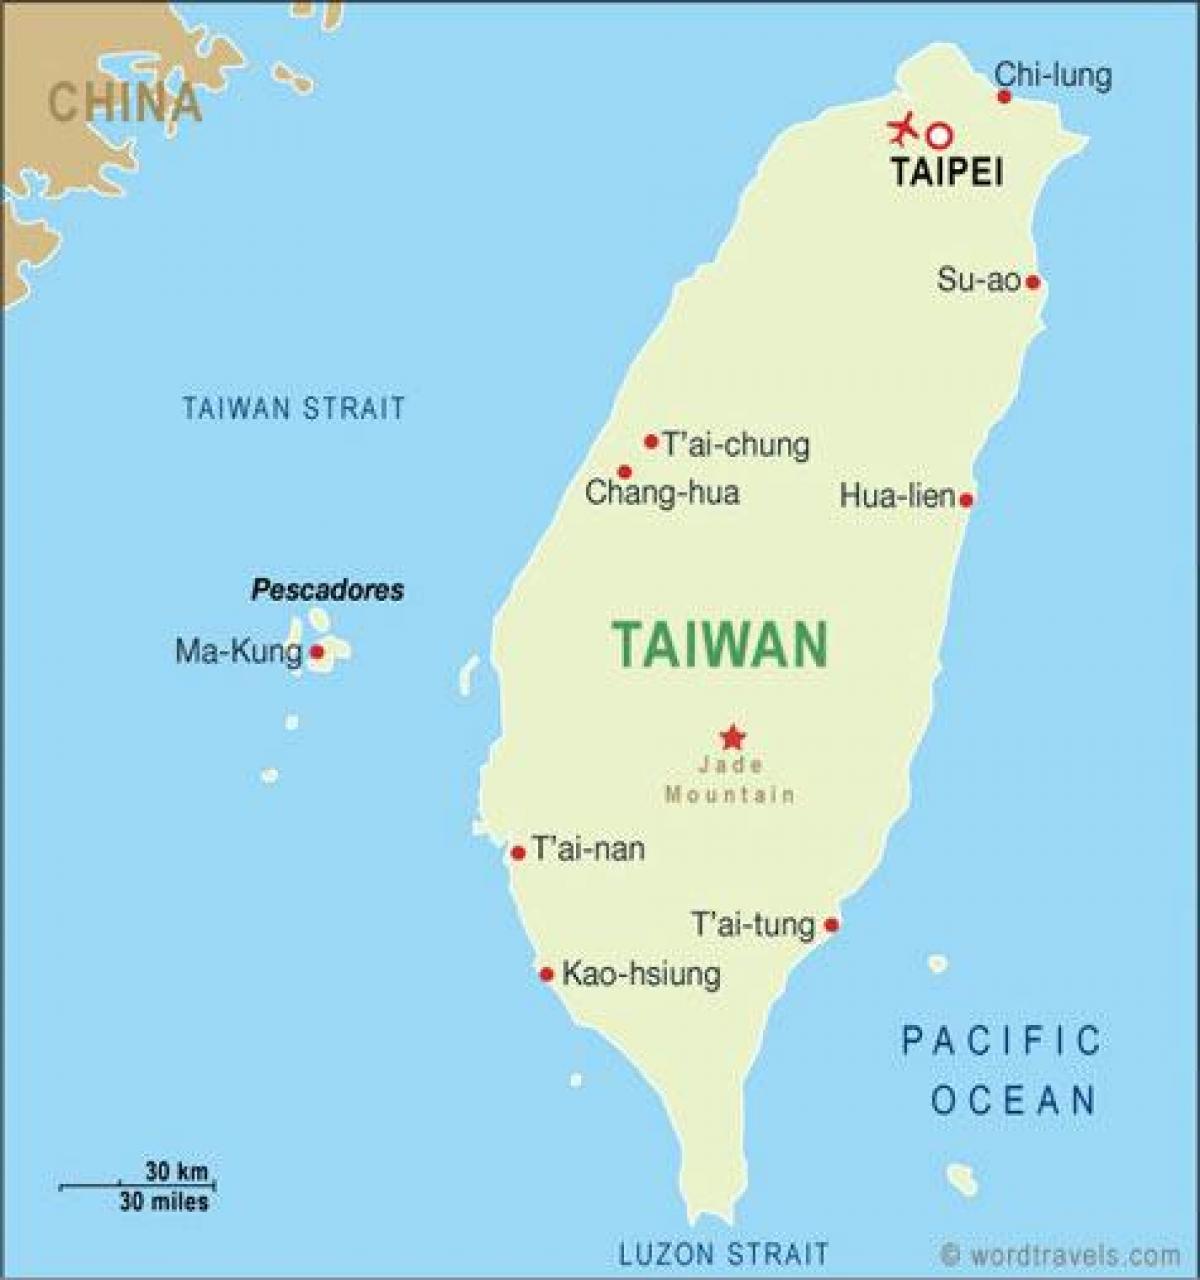 Tayvan taoyuan Uluslararası Havaalanı Haritayı göster